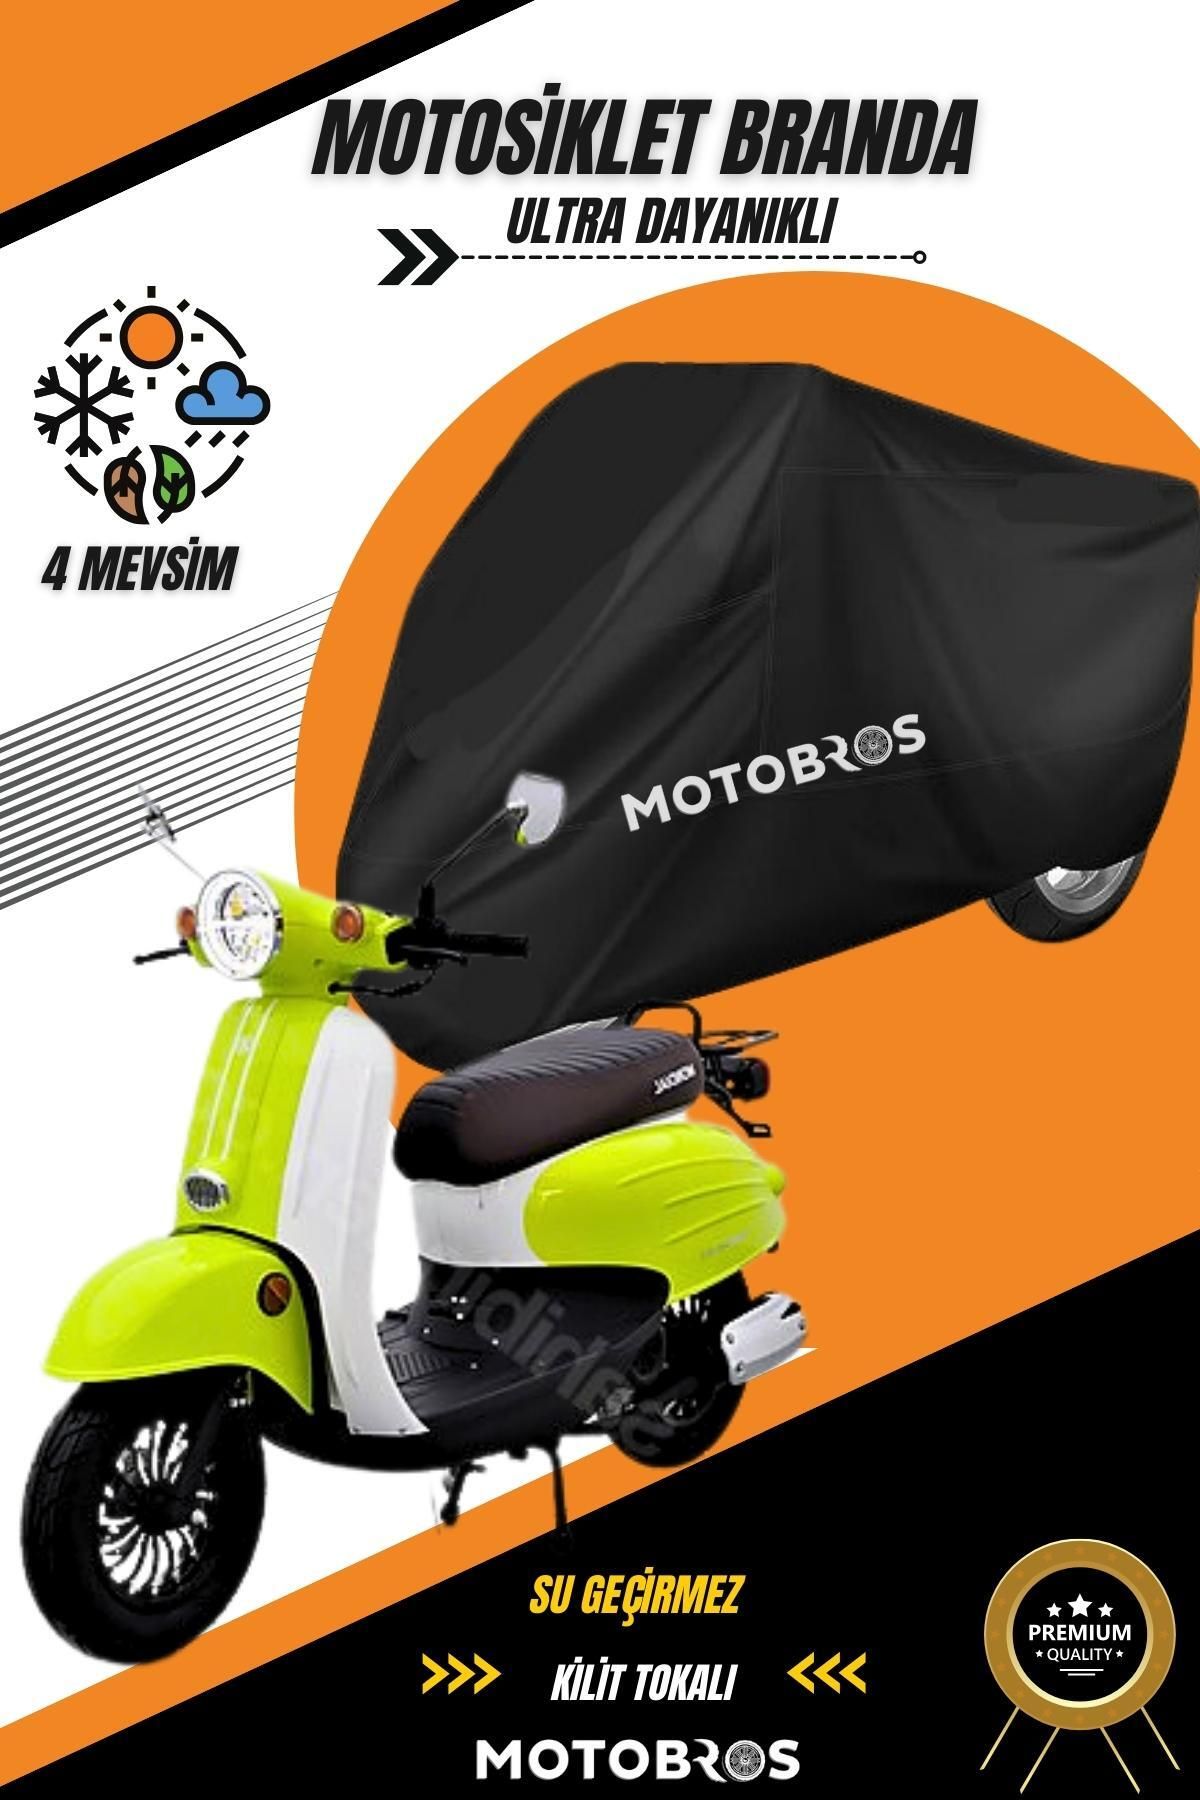 Motobros Mondial Turismo Siyah Su Geçirmez Dayanıklı Motosiklet Brandası (EN KALIN) Kumaş Ömürlük Kullanım